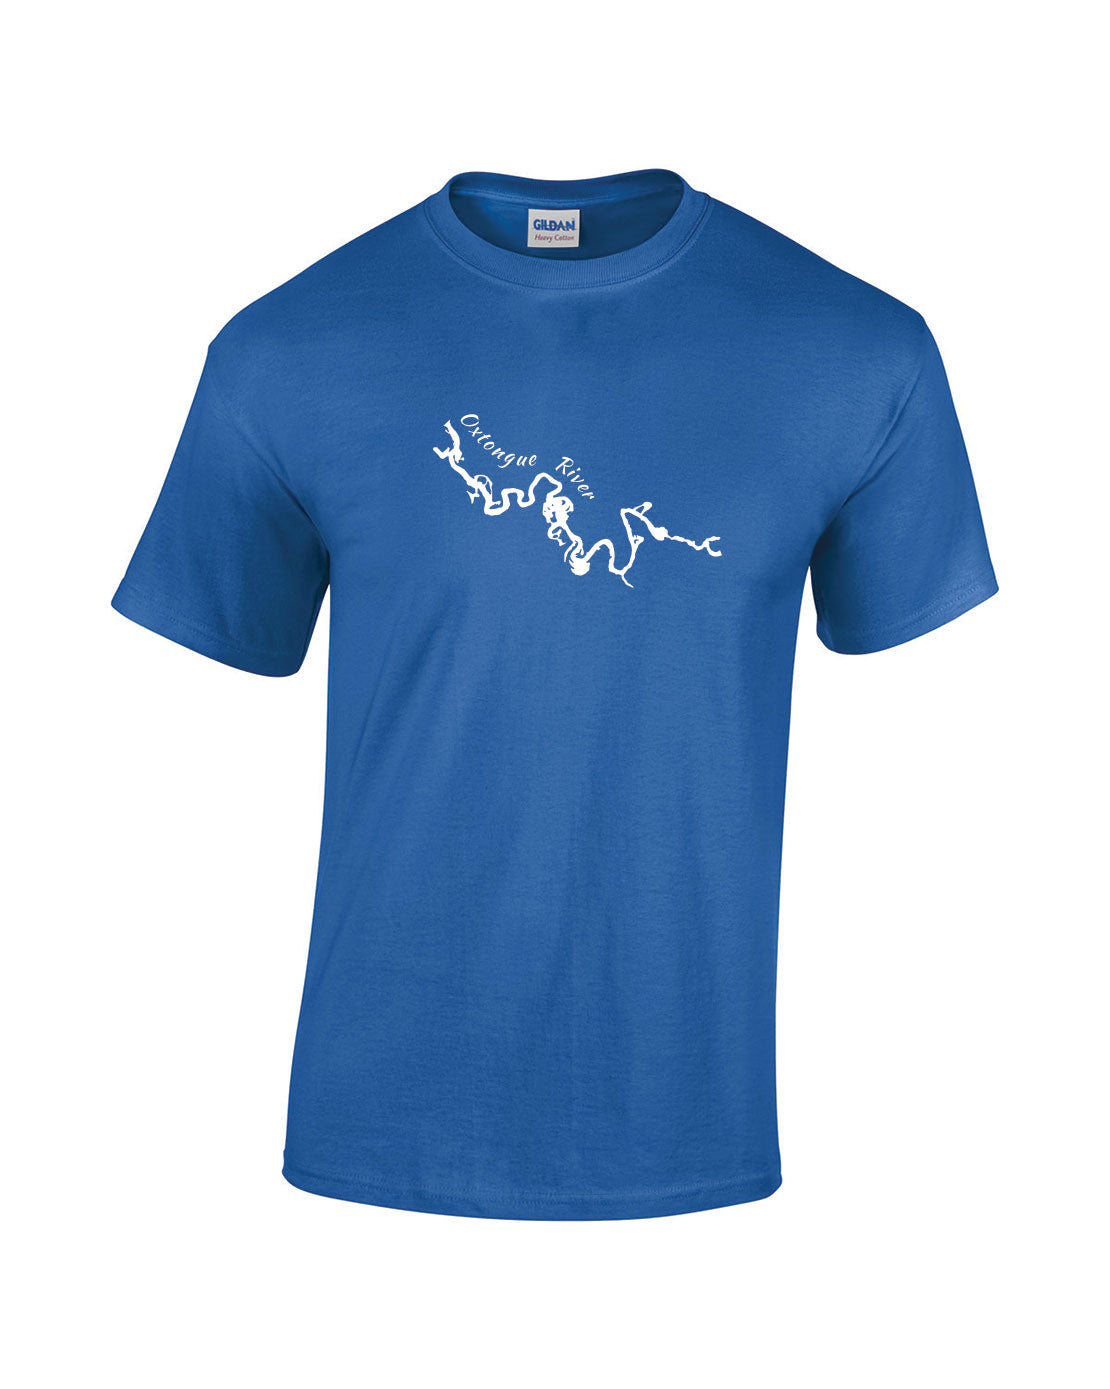 Oxtongue River T-Shirt